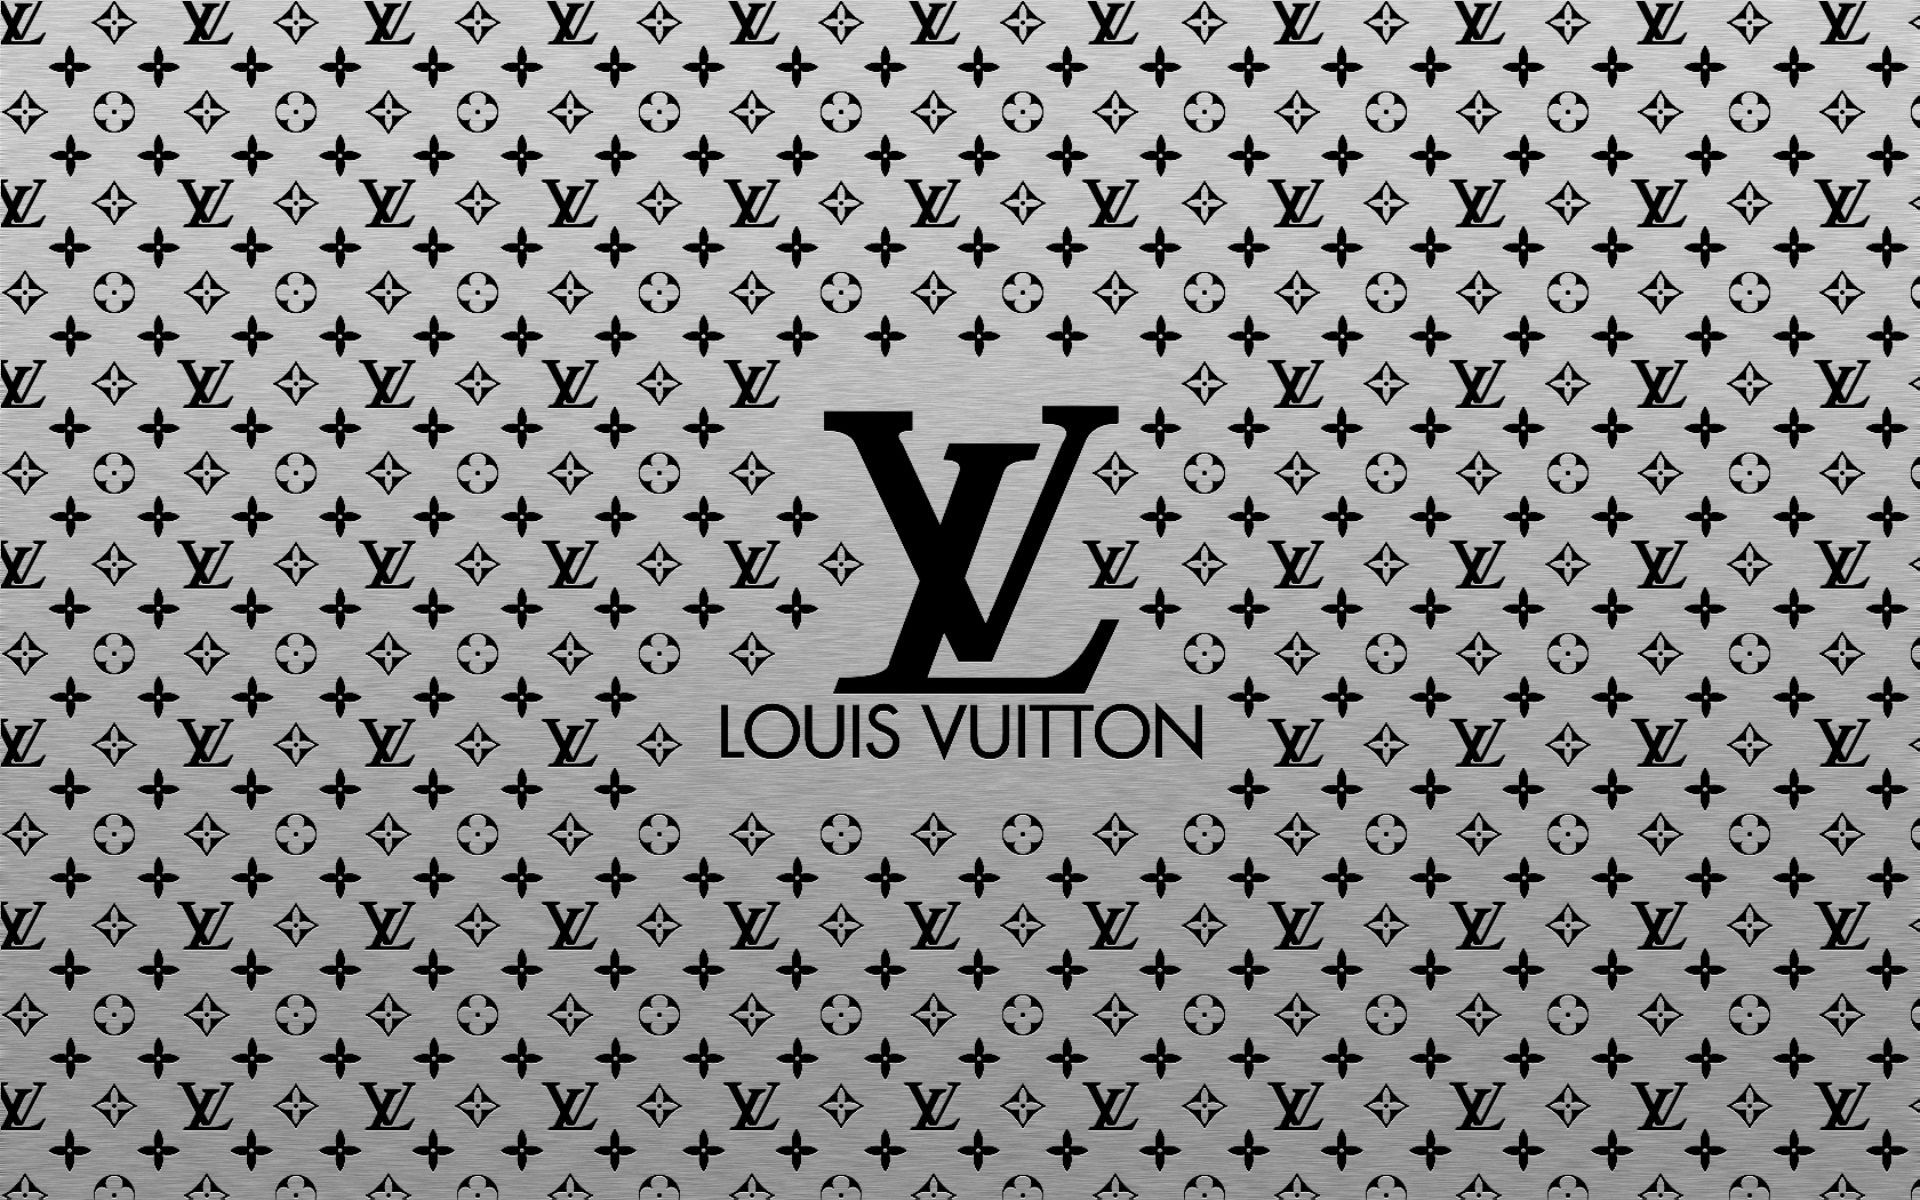 Louis Vuitton Backgrounds